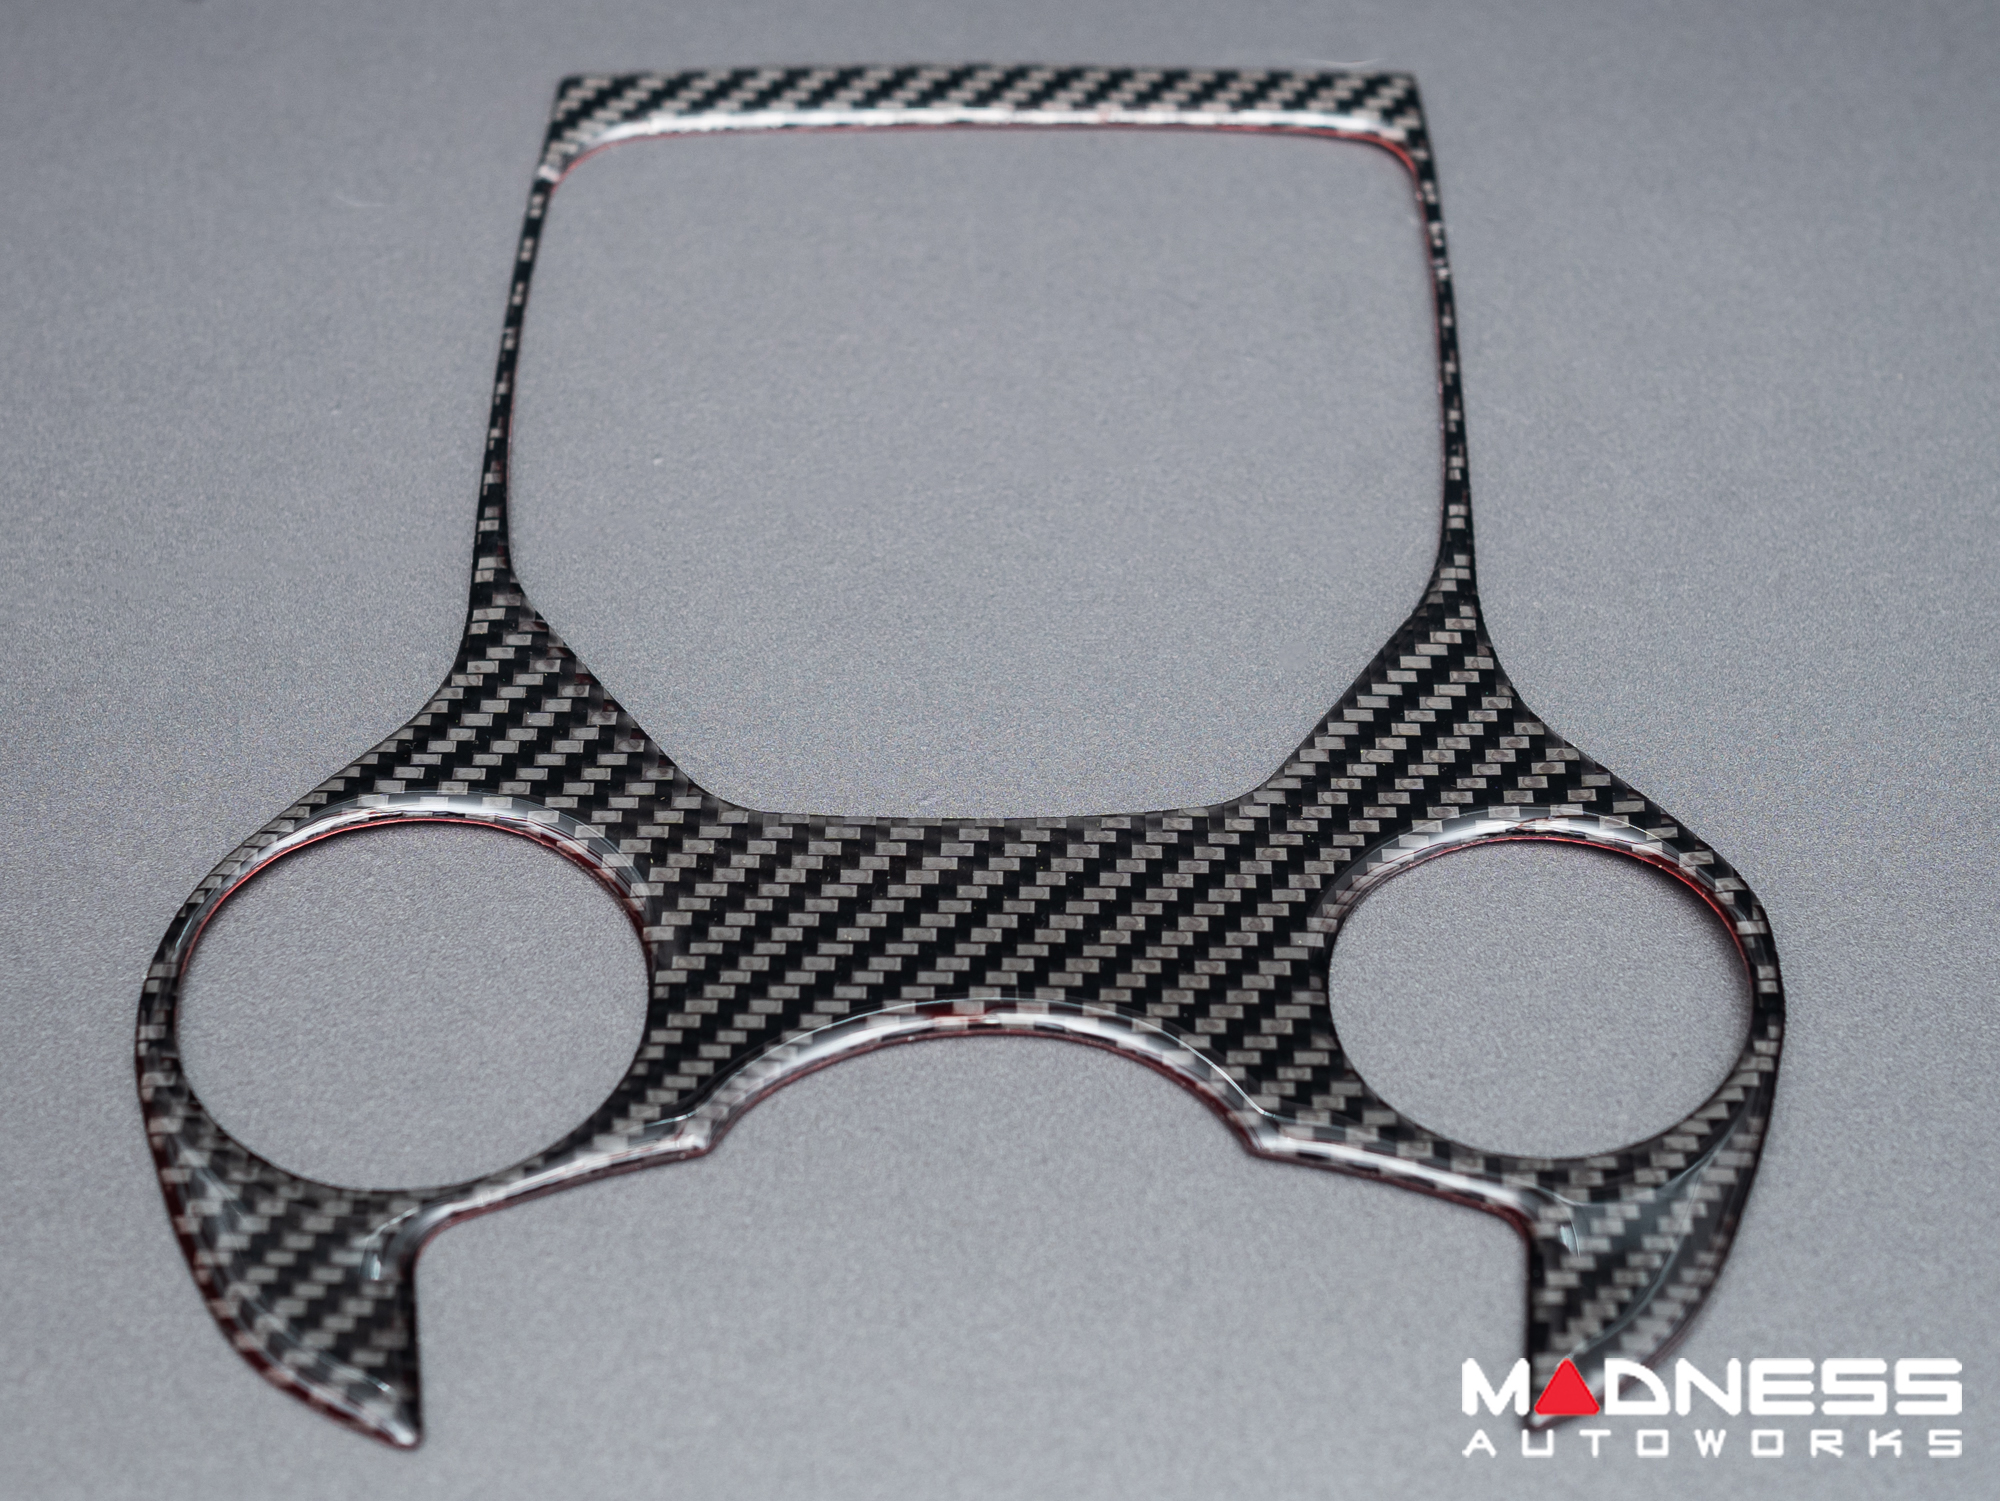 Alfa Romeo Giulia Gear Selector Trim Kit - Carbon Fiber - Flexible / Self Adhesive